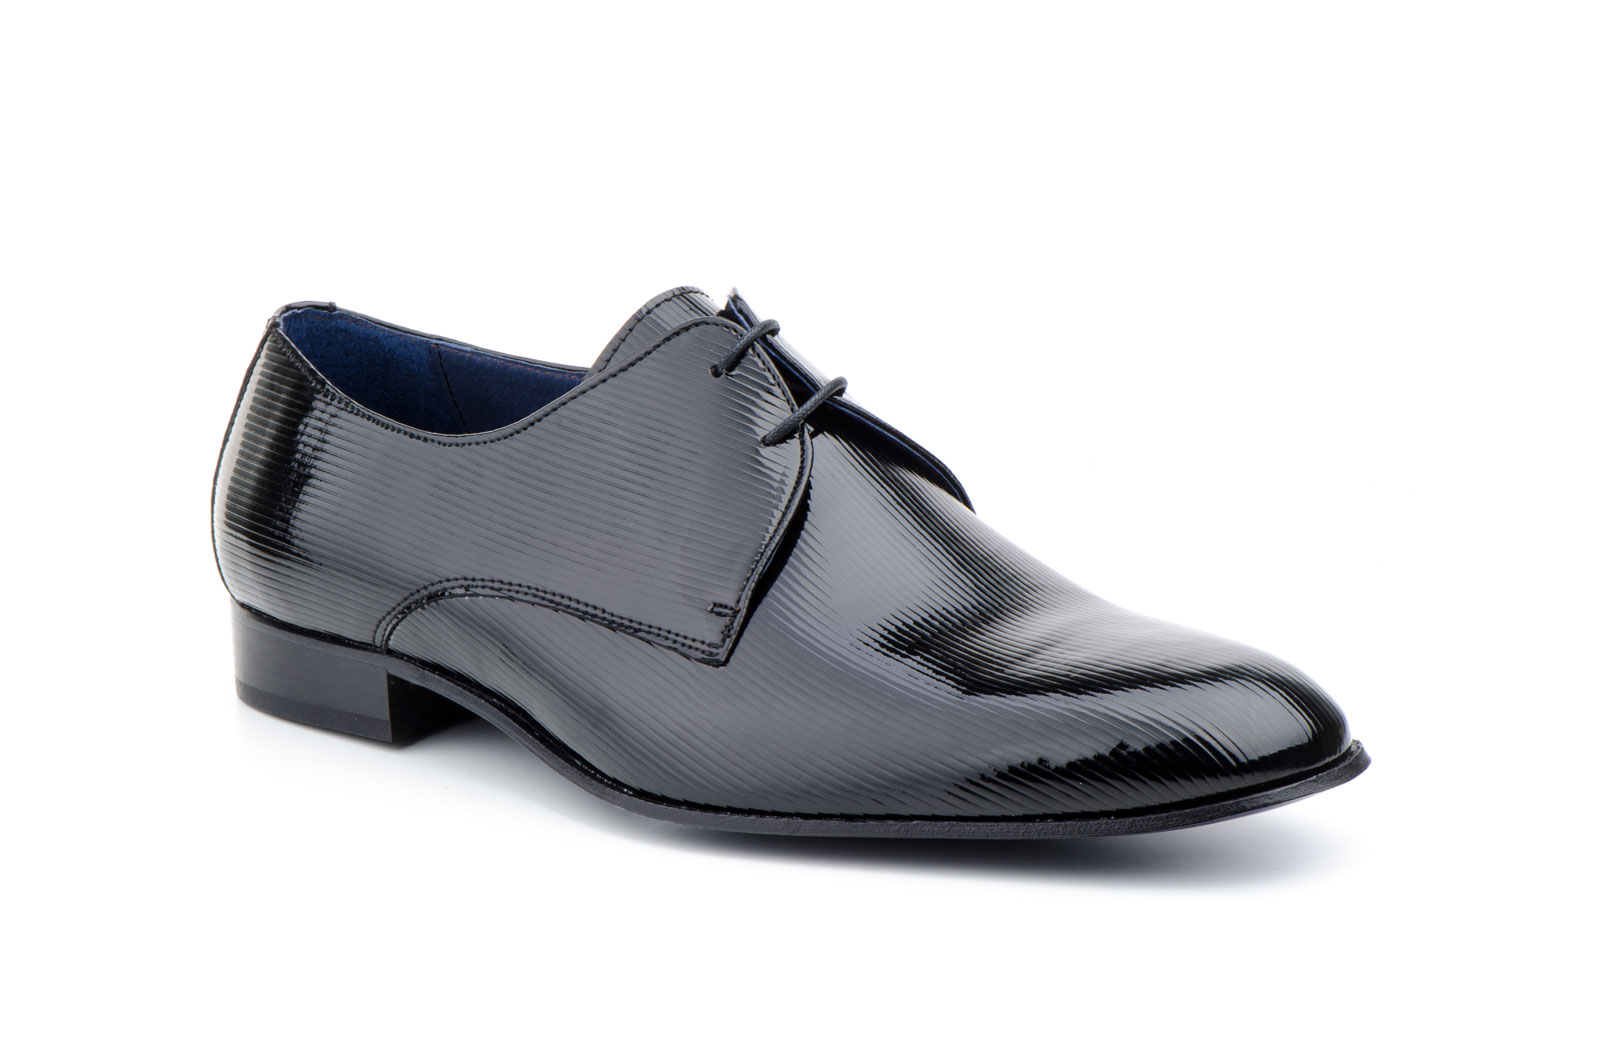 Zapatos Hombre Charol Negro Pana Cordones Suela de Cuero   -  Ref. 5009 Negro